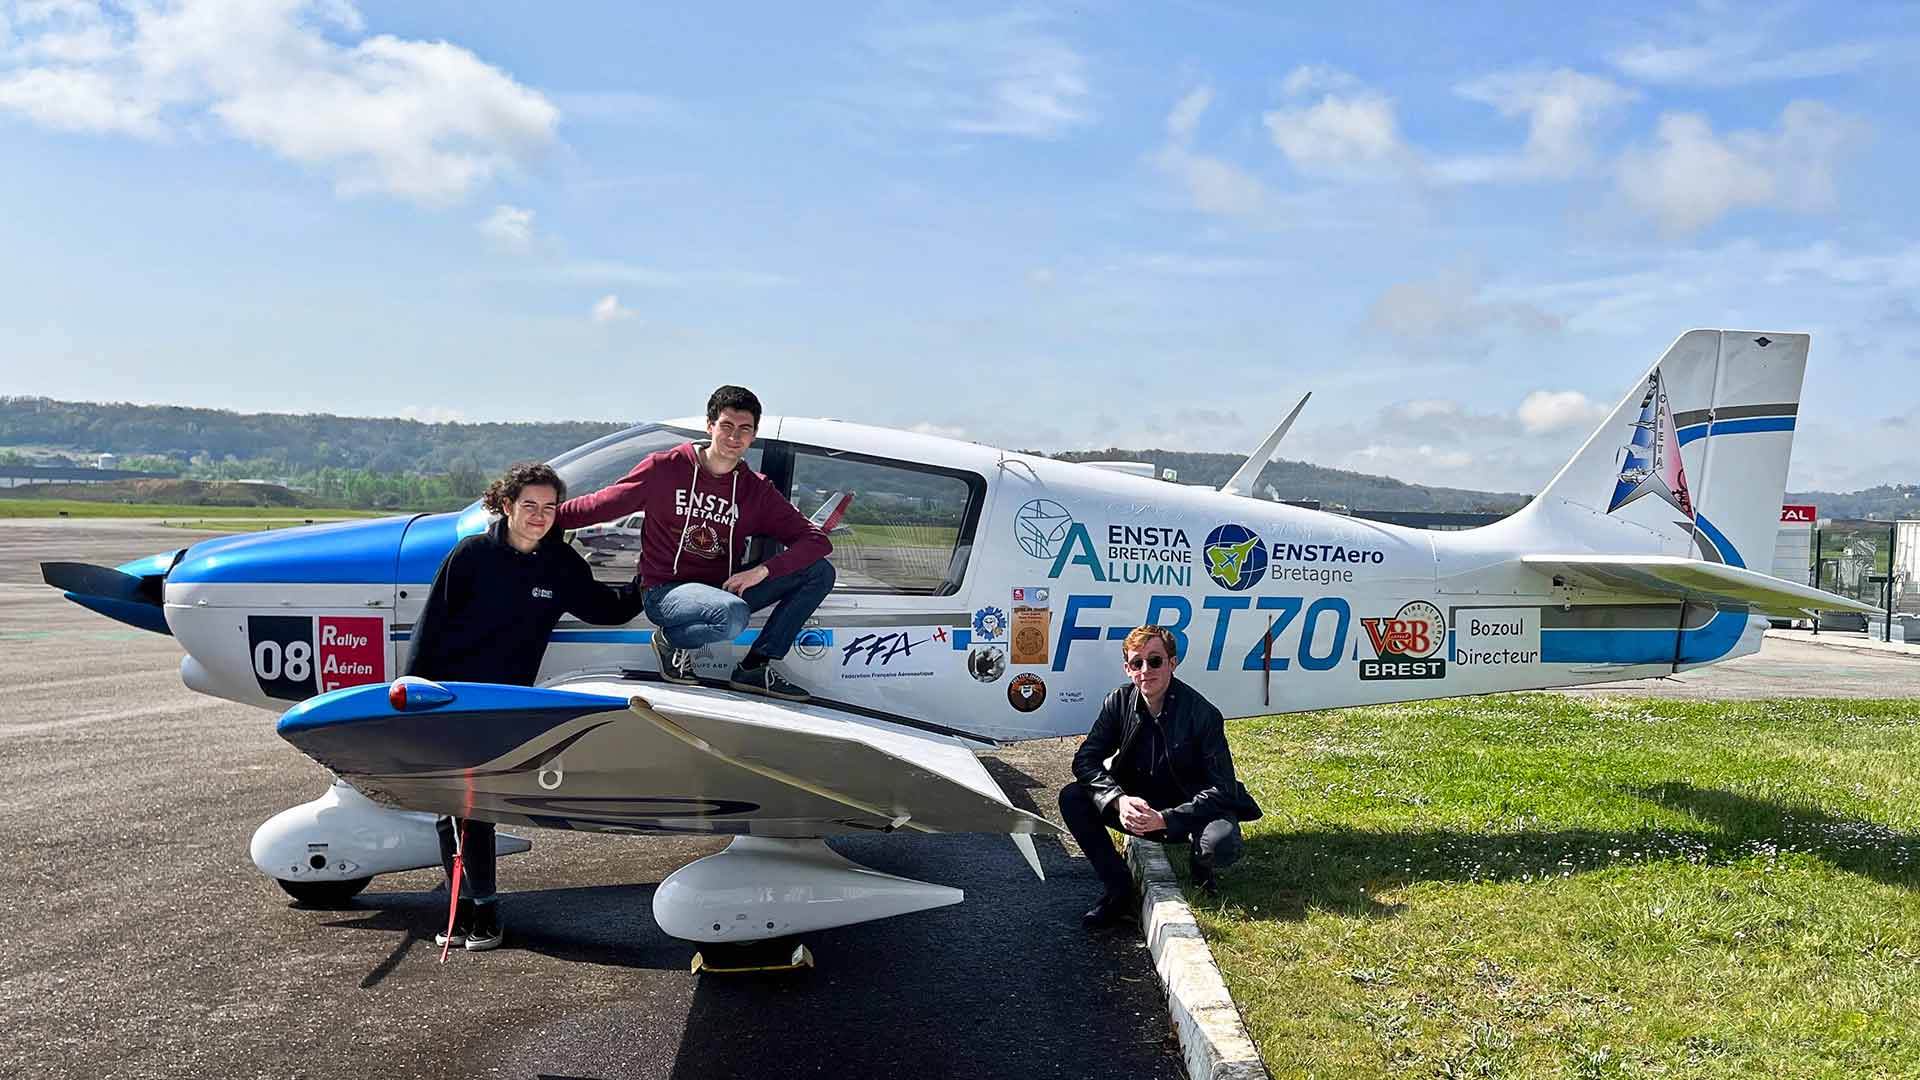 ENSTA Bretagne : Rallye Aérien Etudiant 2020 avec la participation d'élèves-ingénieurs ENSTA Bretagne